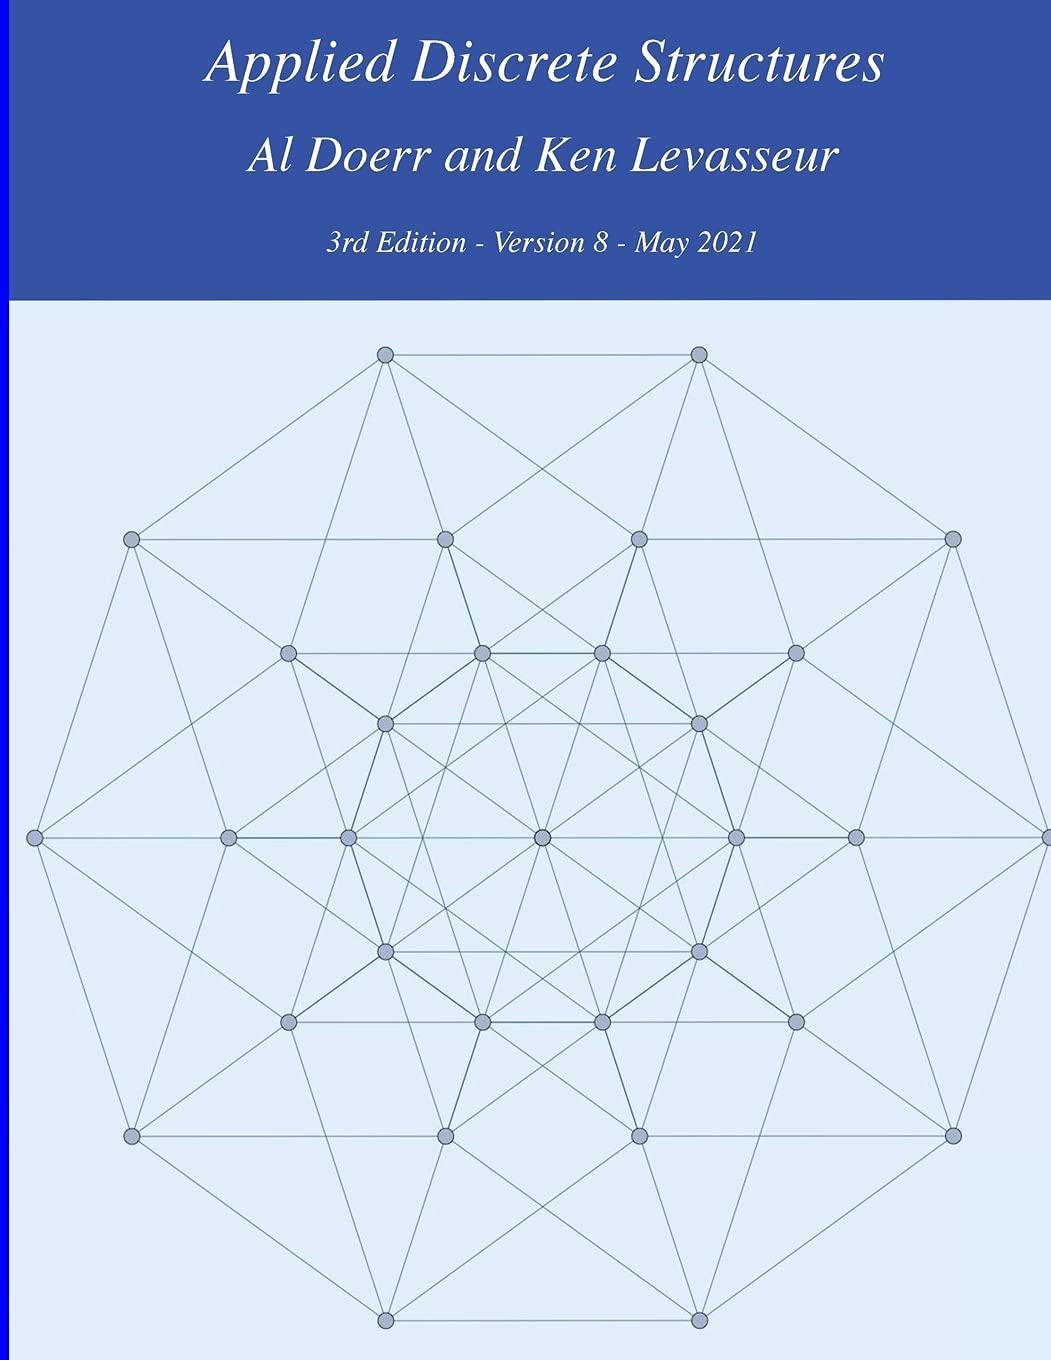 applied discrete structures 3rd edition ken levasseur, al doerr 1105559297, 9781105559297